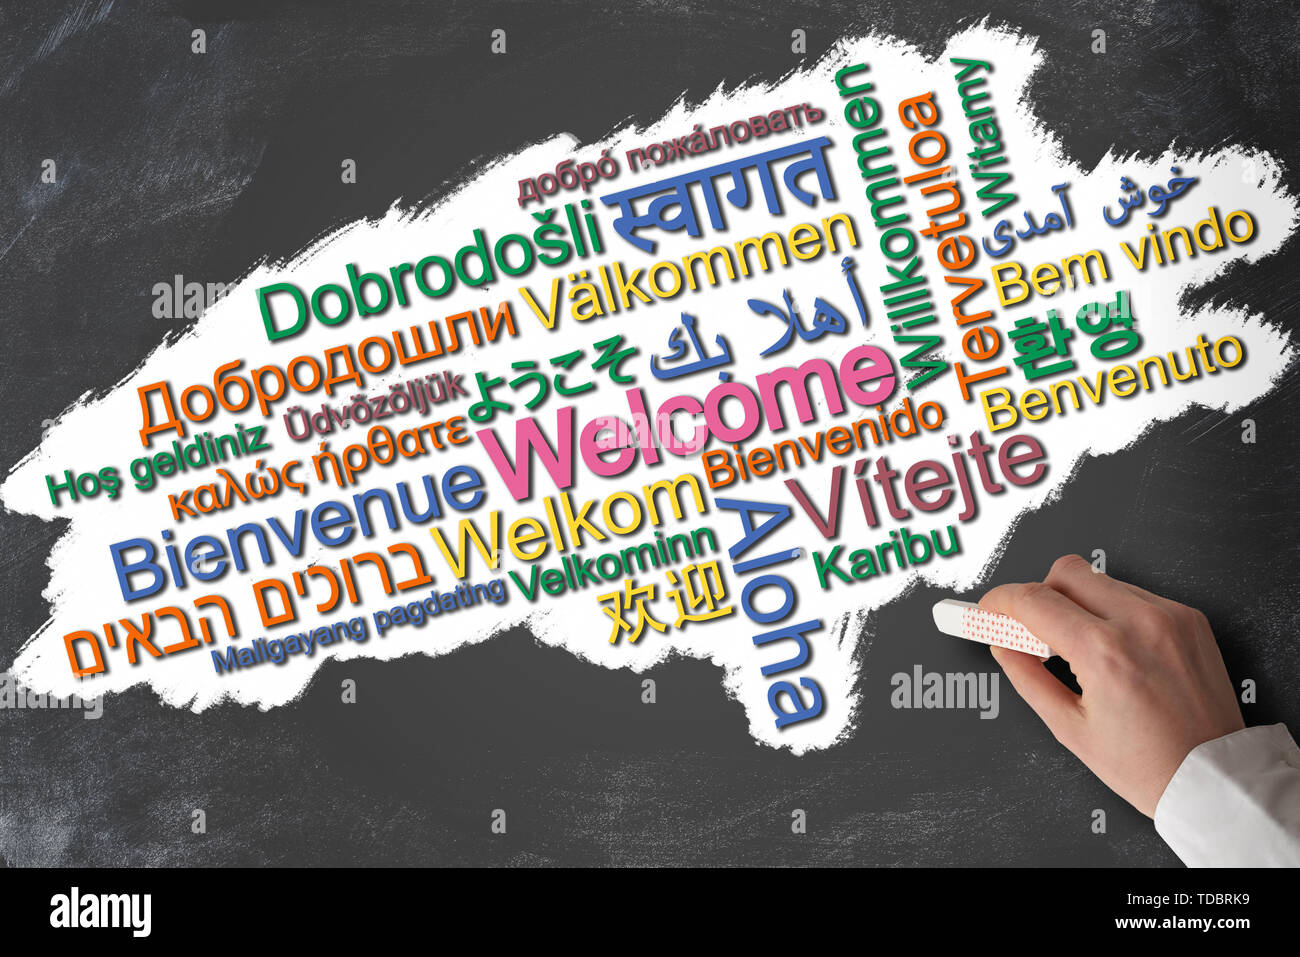 Bienvenue dans de nombreuses langues différentes nuage de mots on chalkboard Banque D'Images